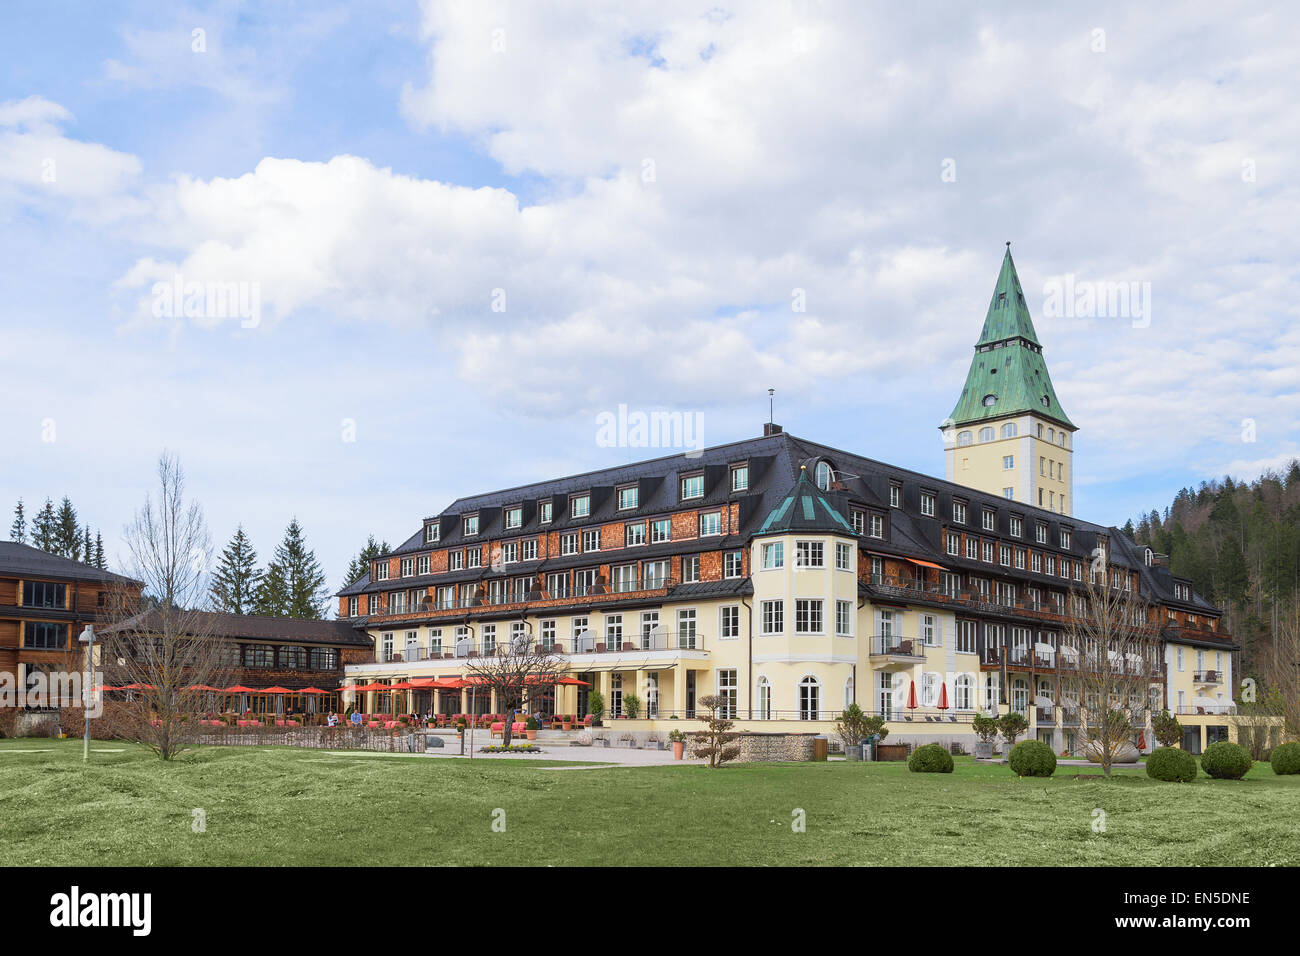 Die Staats-und Regierungschefs der G7 "Großen sieben" Länder treffen sich im Hotel Schloss Elmau königlichen Luxus-Residenz in bayerischen Alpental. Stockfoto